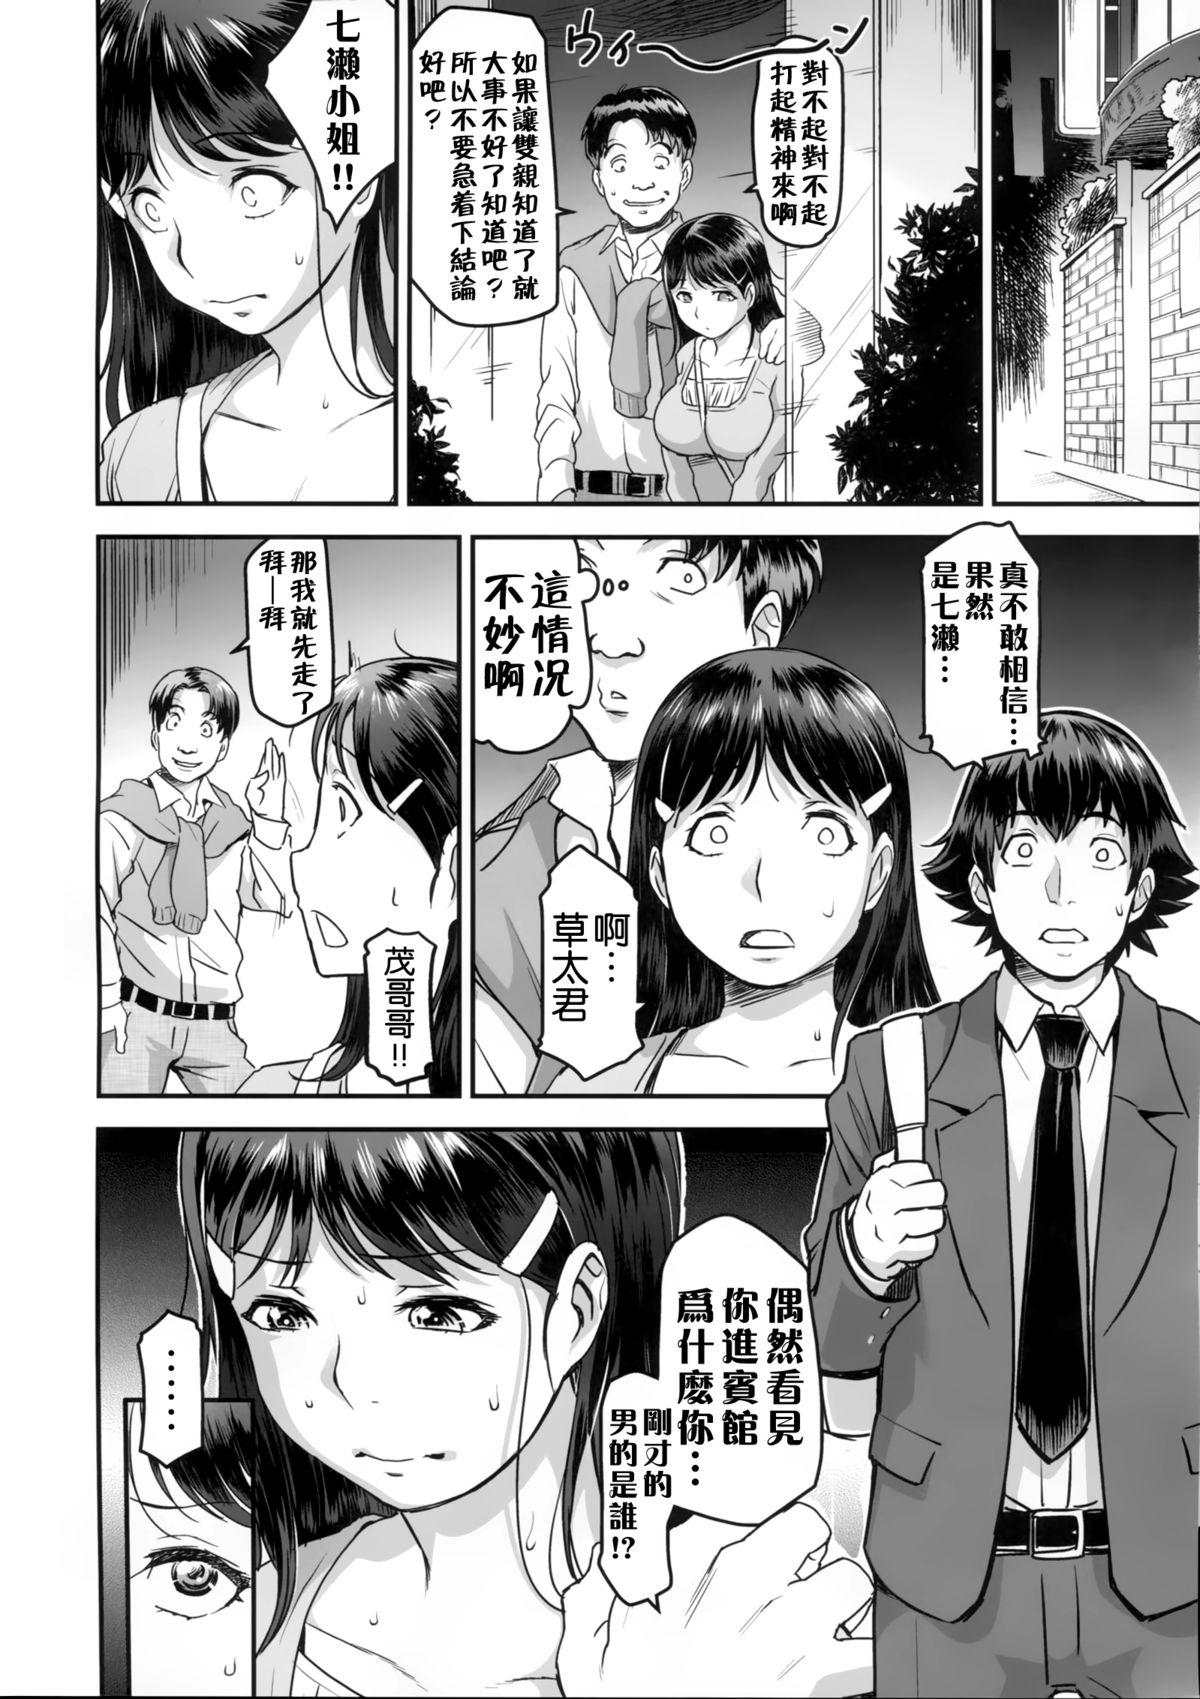 Wet Zoku Nanase-san ni Yokorenbo - Kindaichi shounen no jikenbo Gostosas - Page 9